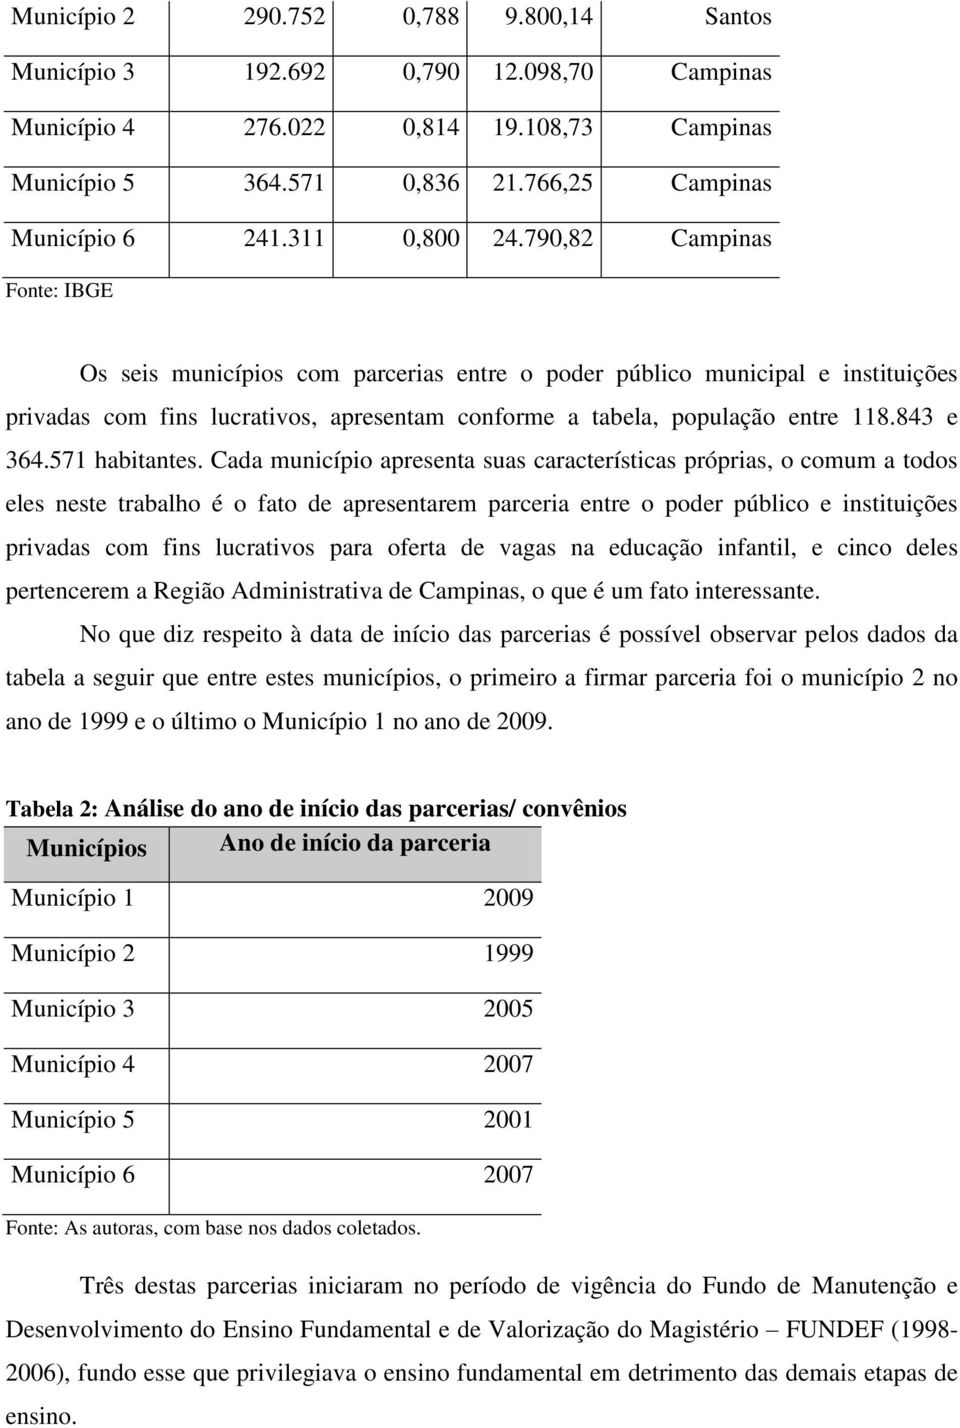 790,82 Campinas Fonte: IBGE Os seis municípios com parcerias entre o poder público municipal e instituições privadas com fins lucrativos, apresentam conforme a tabela, população entre 118.843 e 364.